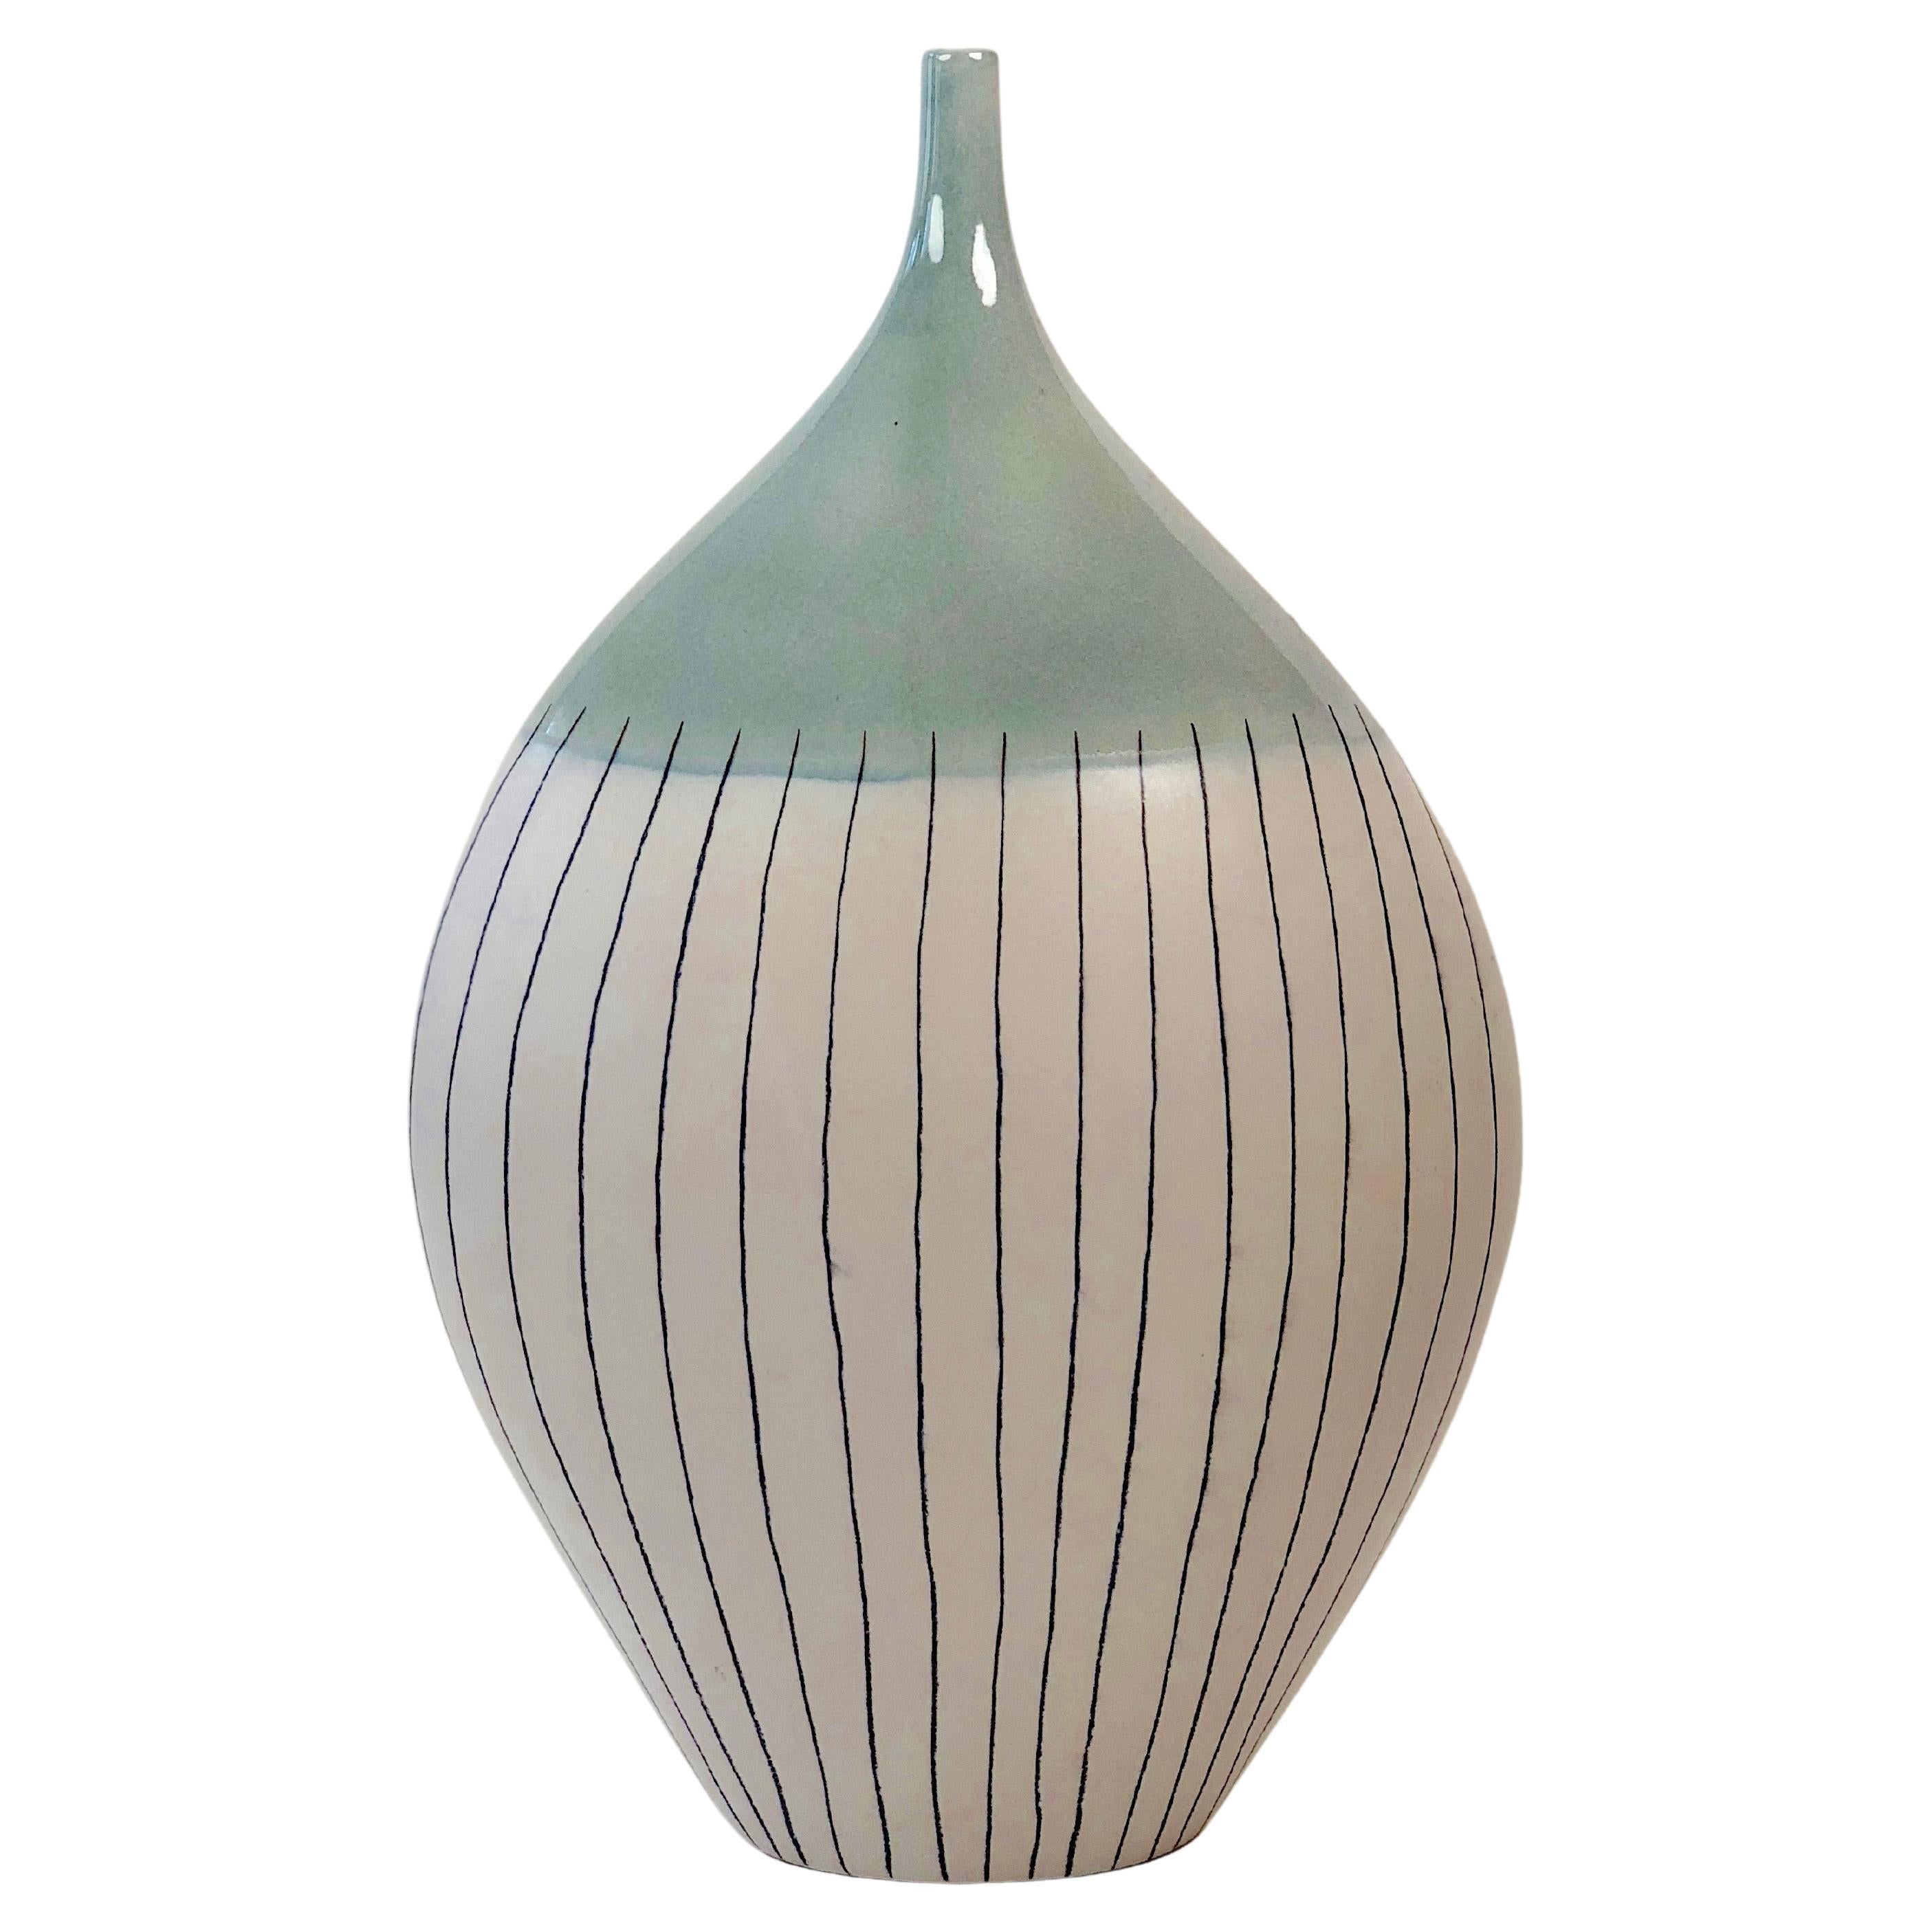 Grand vase en céramique dans un style minimaliste des années 60